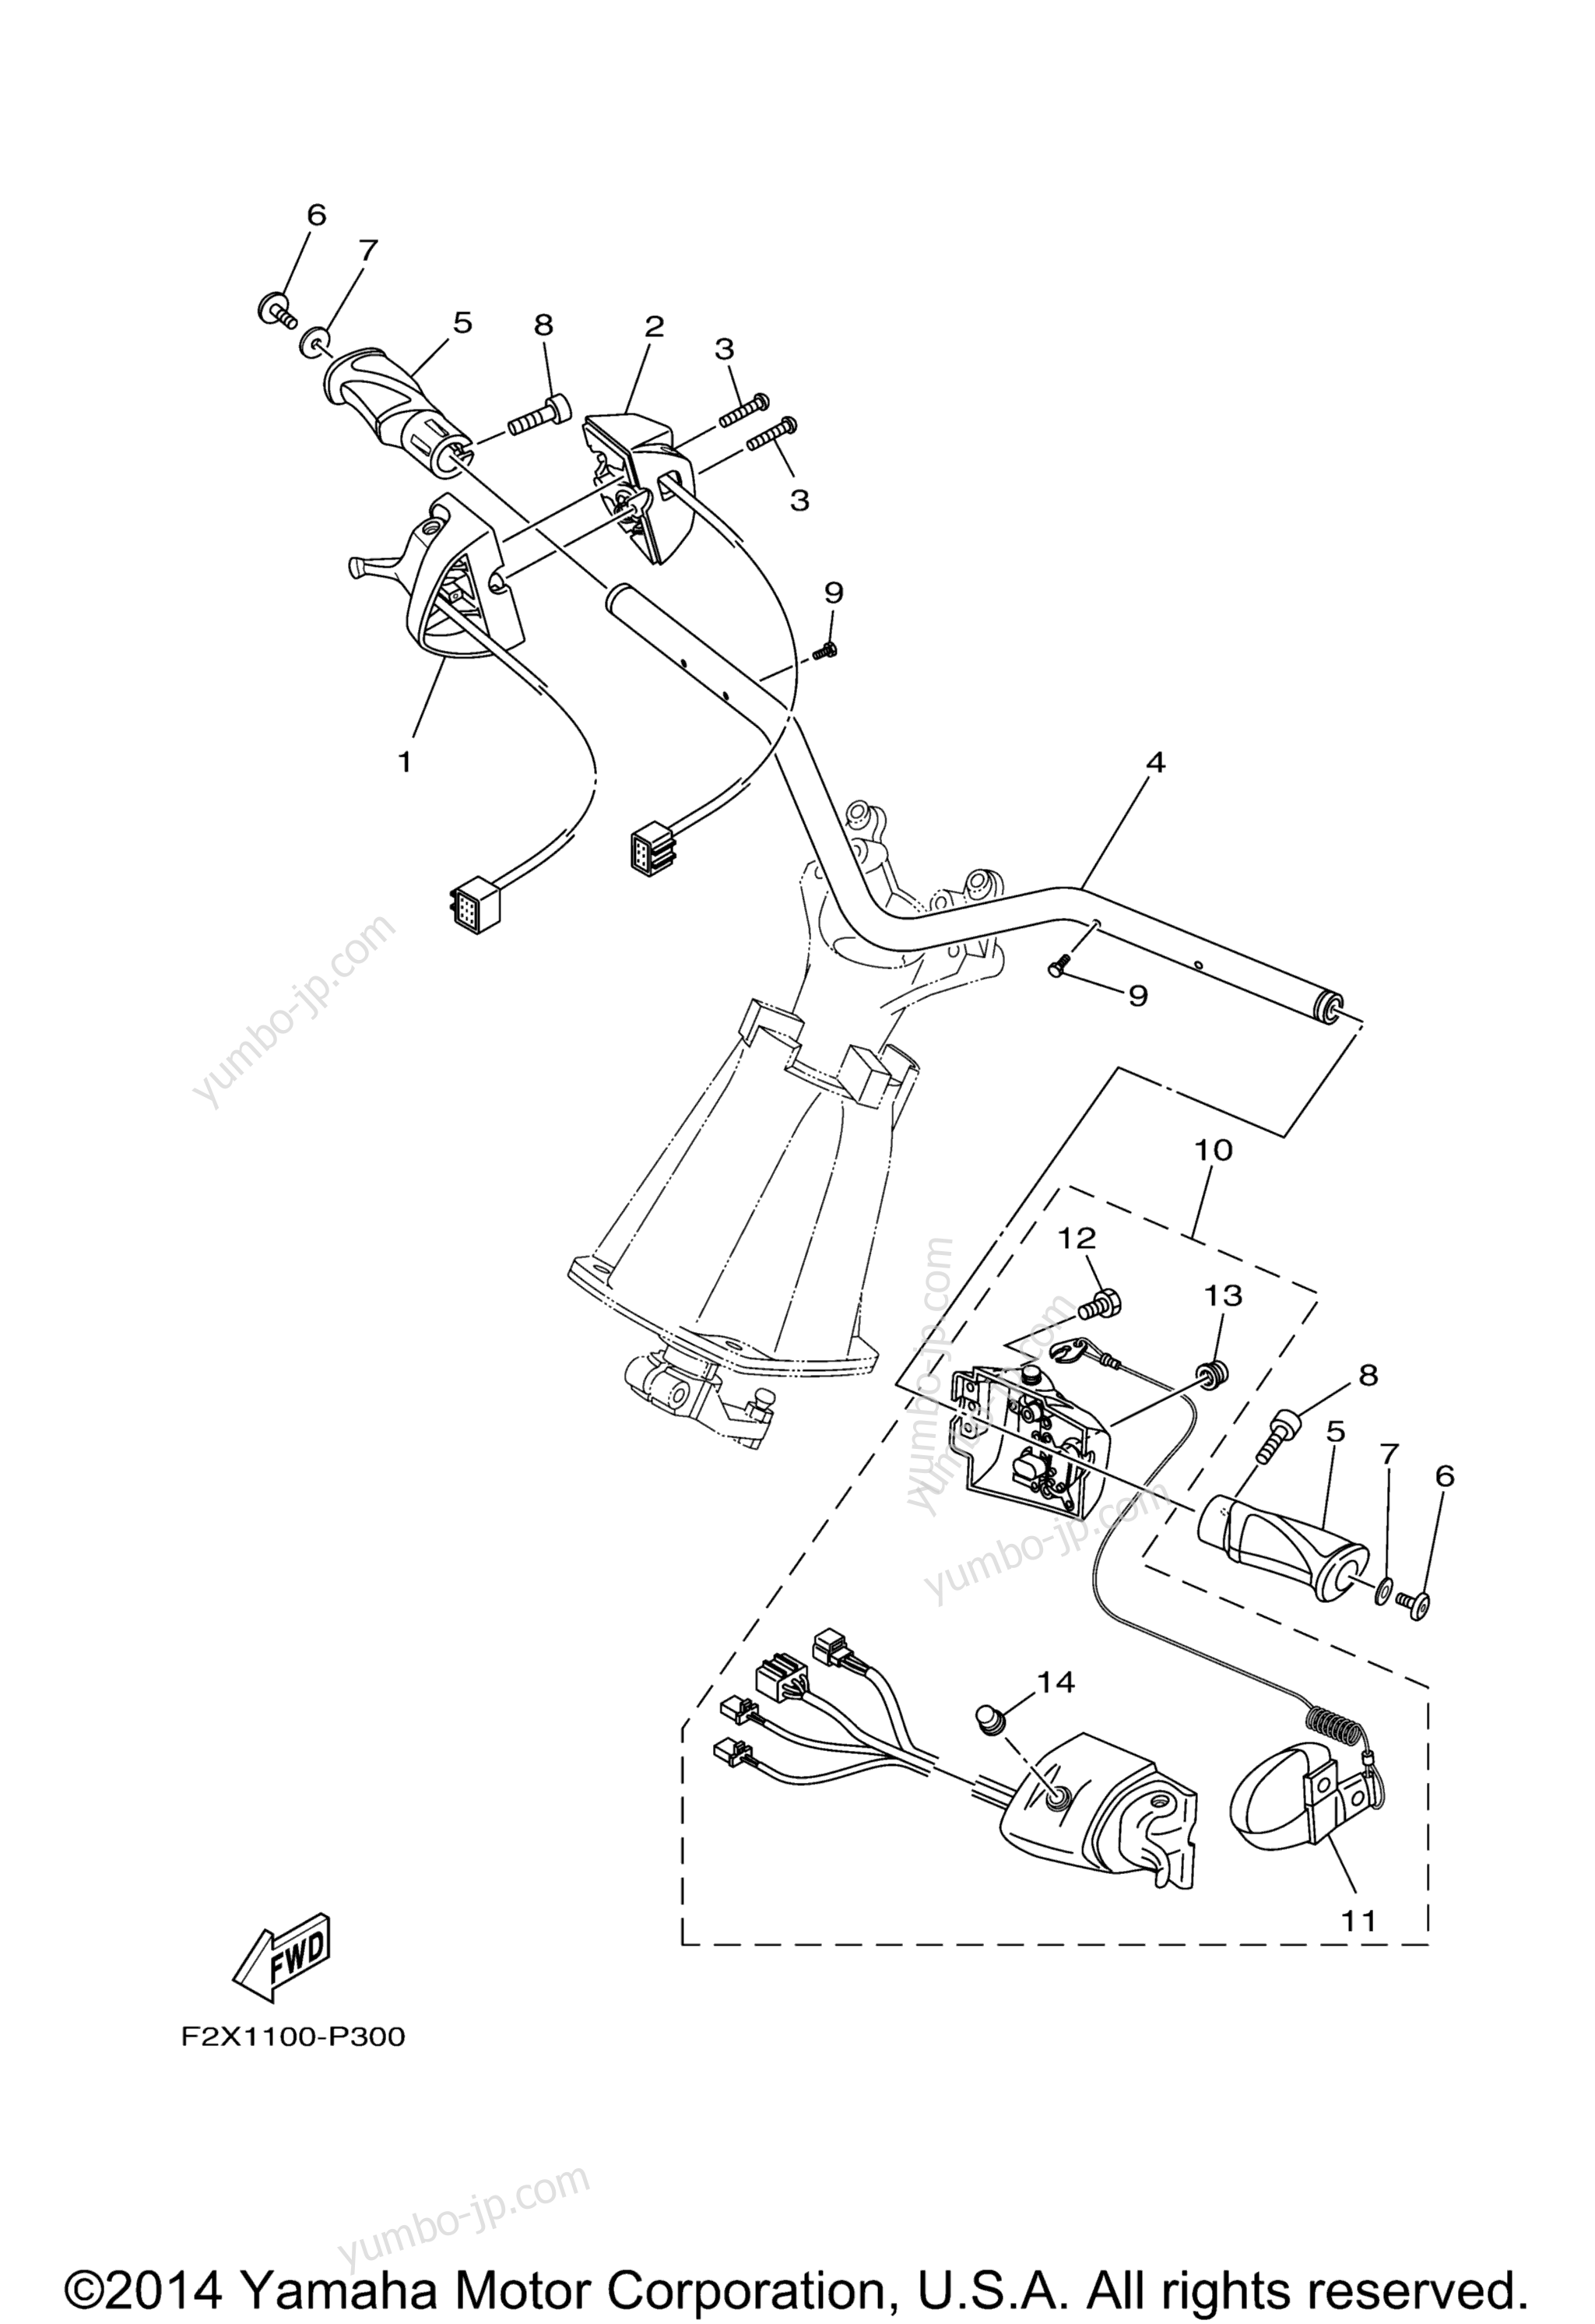 Steering 1 для гидроциклов YAMAHA VX CRUISER_VX1100BP VX DELUXE (VX1100AP) 2015 г.